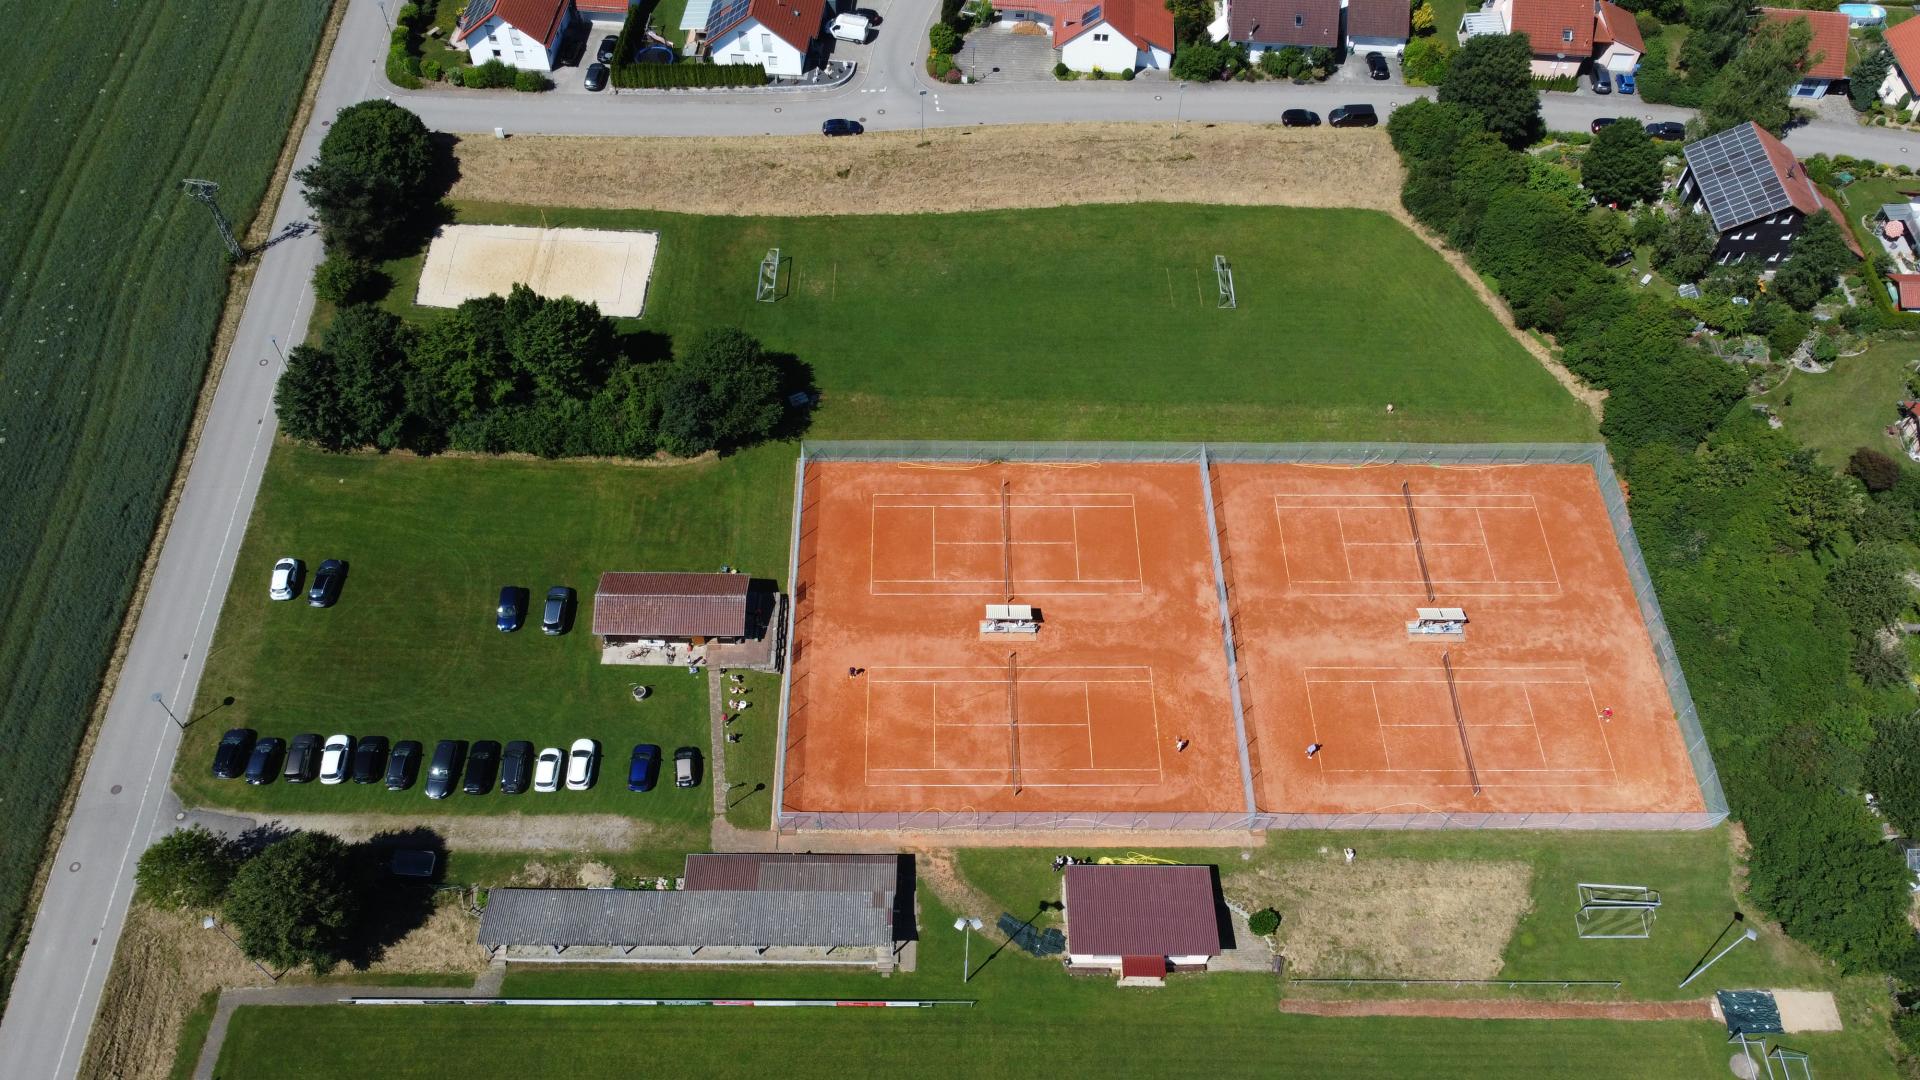 Tennisplatz von oben_Bild 1